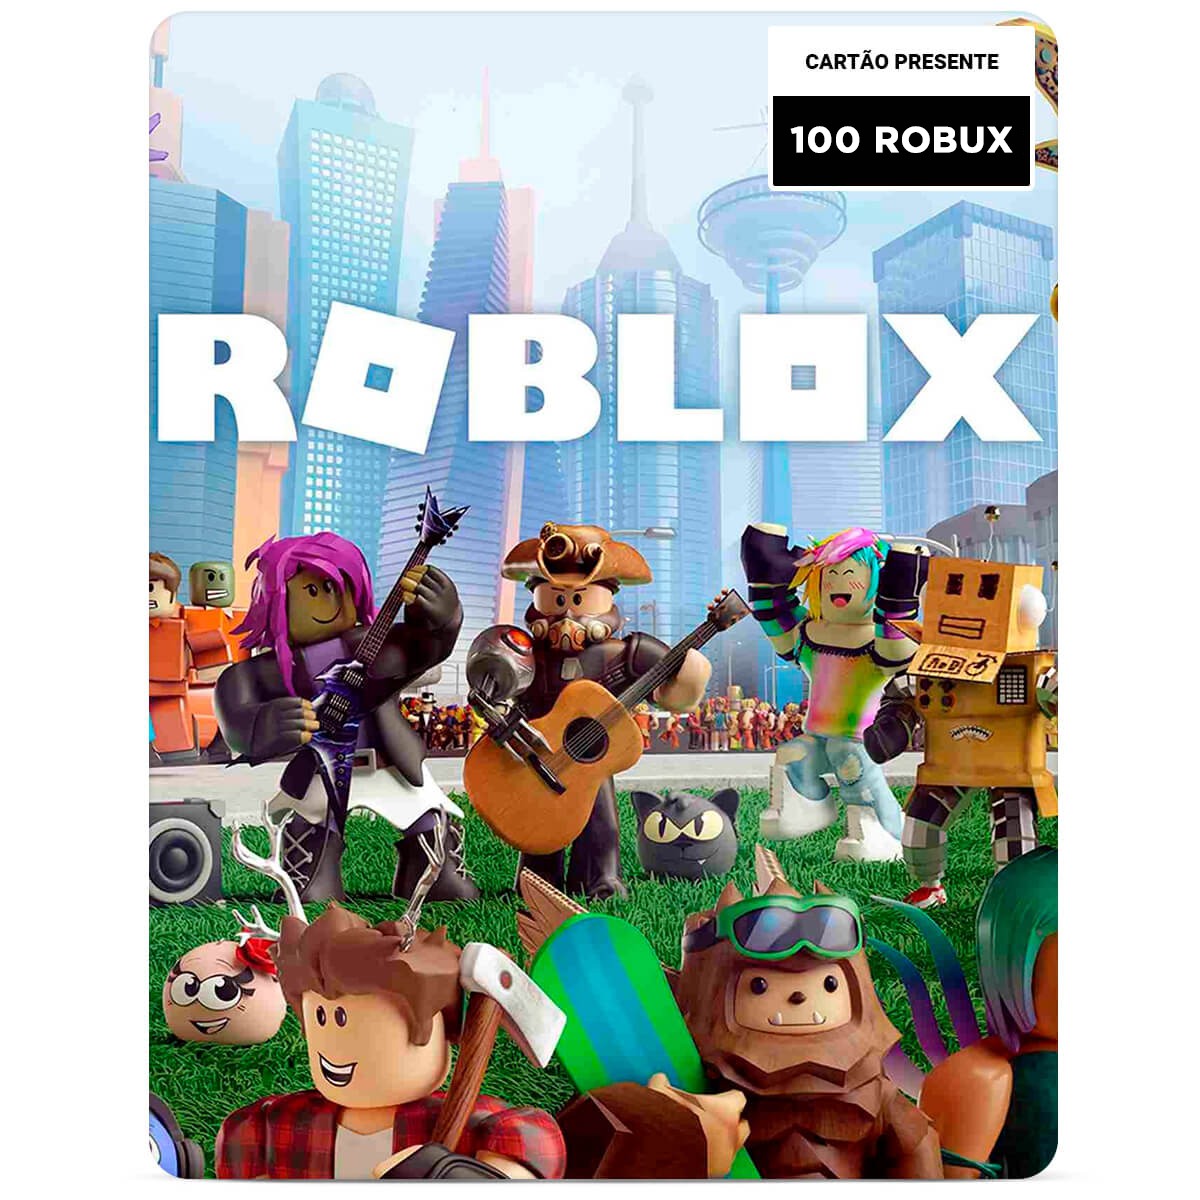 CONTA ROBLOX ANTIGA COM 100 ROBUX NÃO - Roblox - Outros jogos Roblox - GGMAX